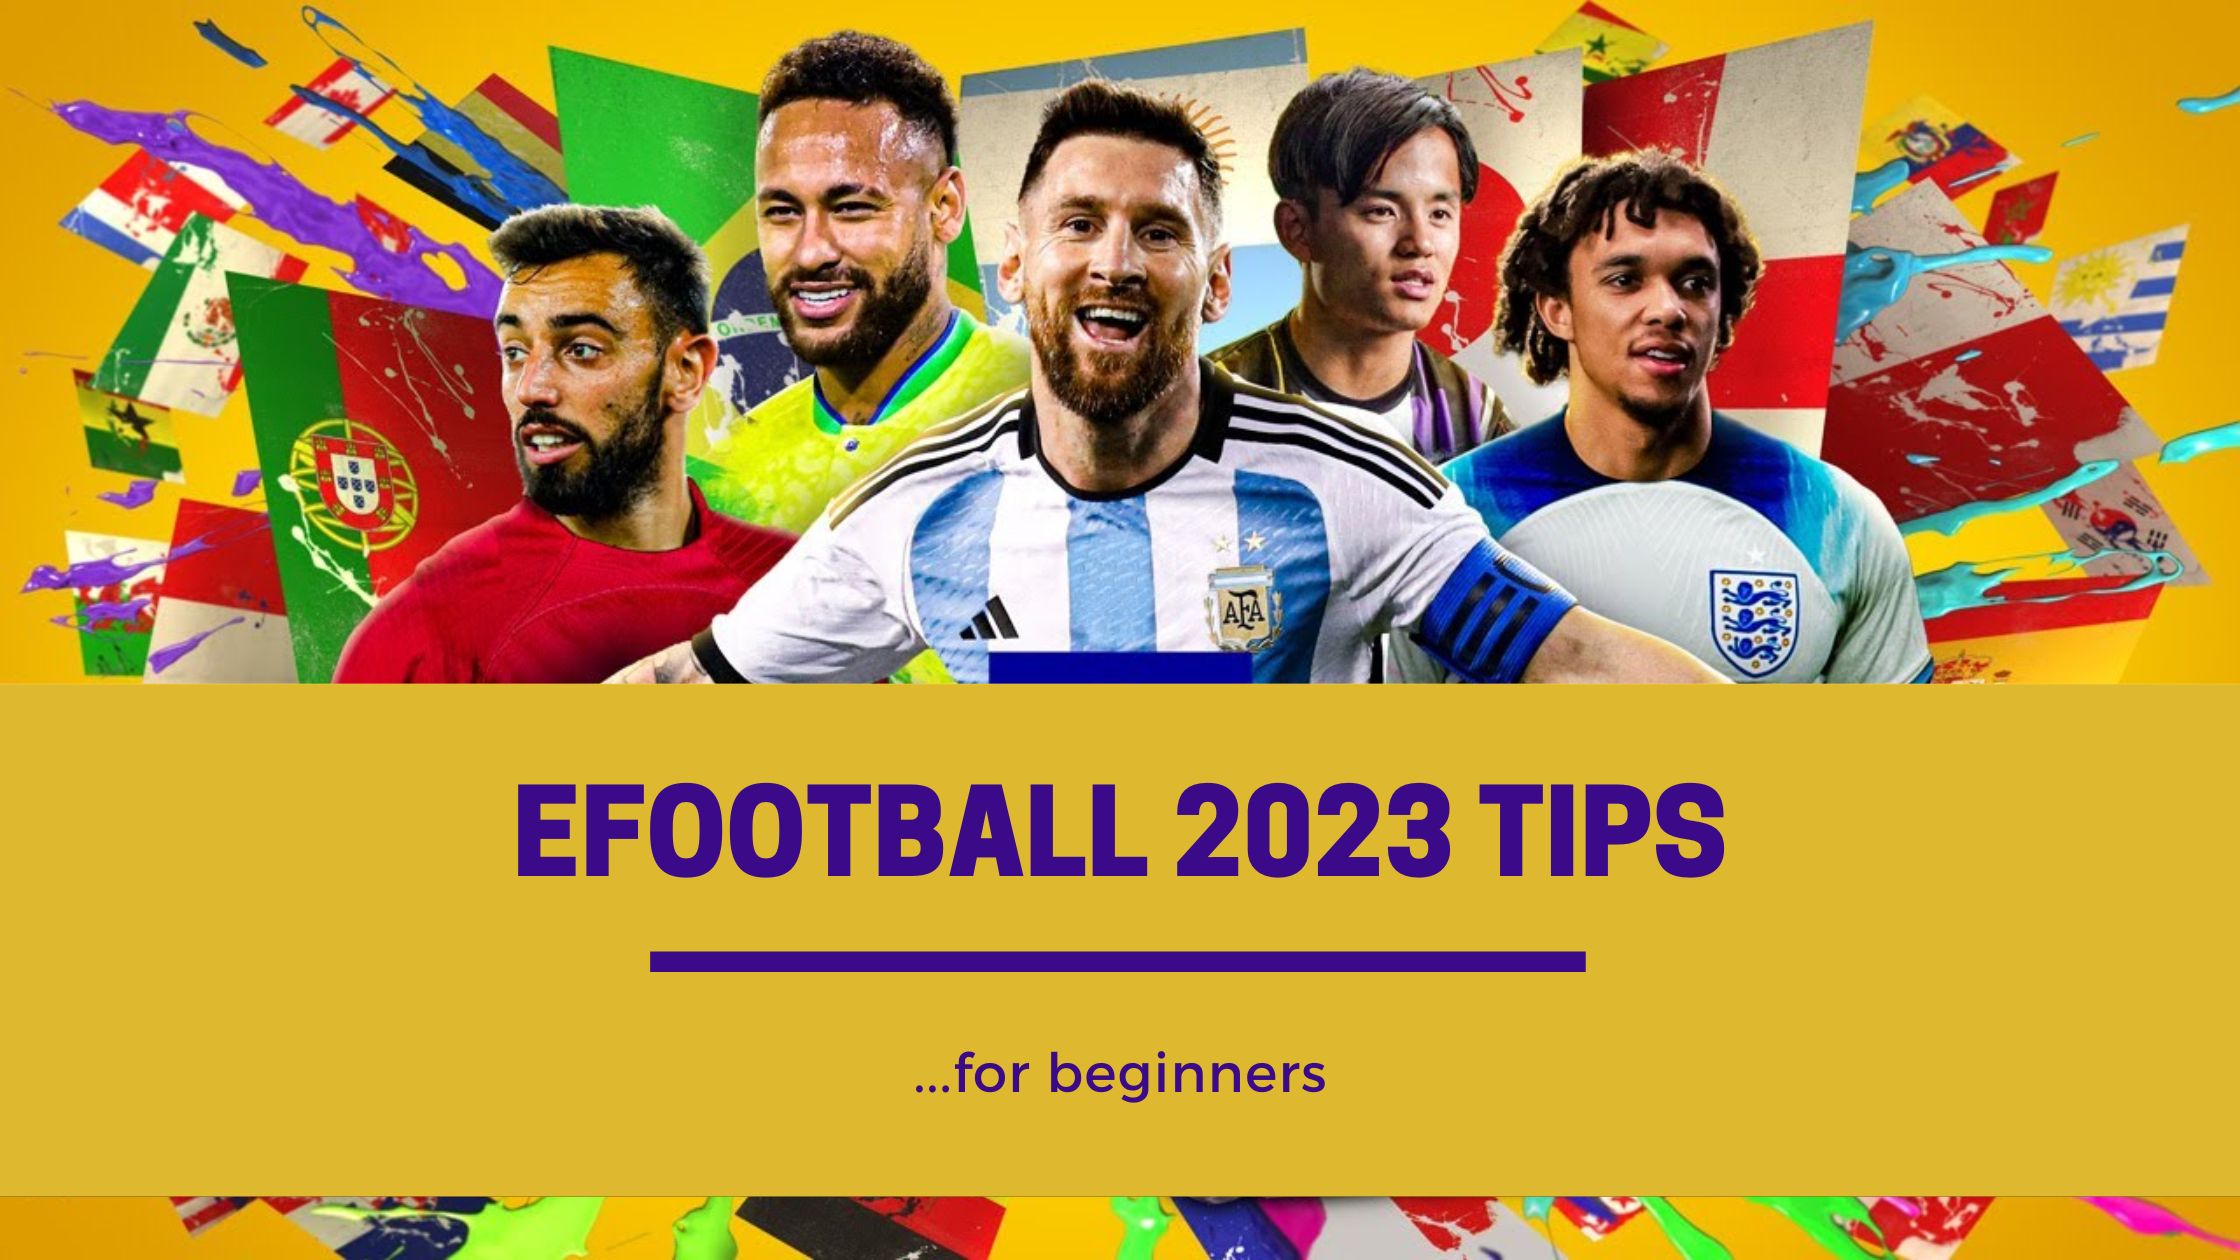 eFootball 2023 Tips for beginners